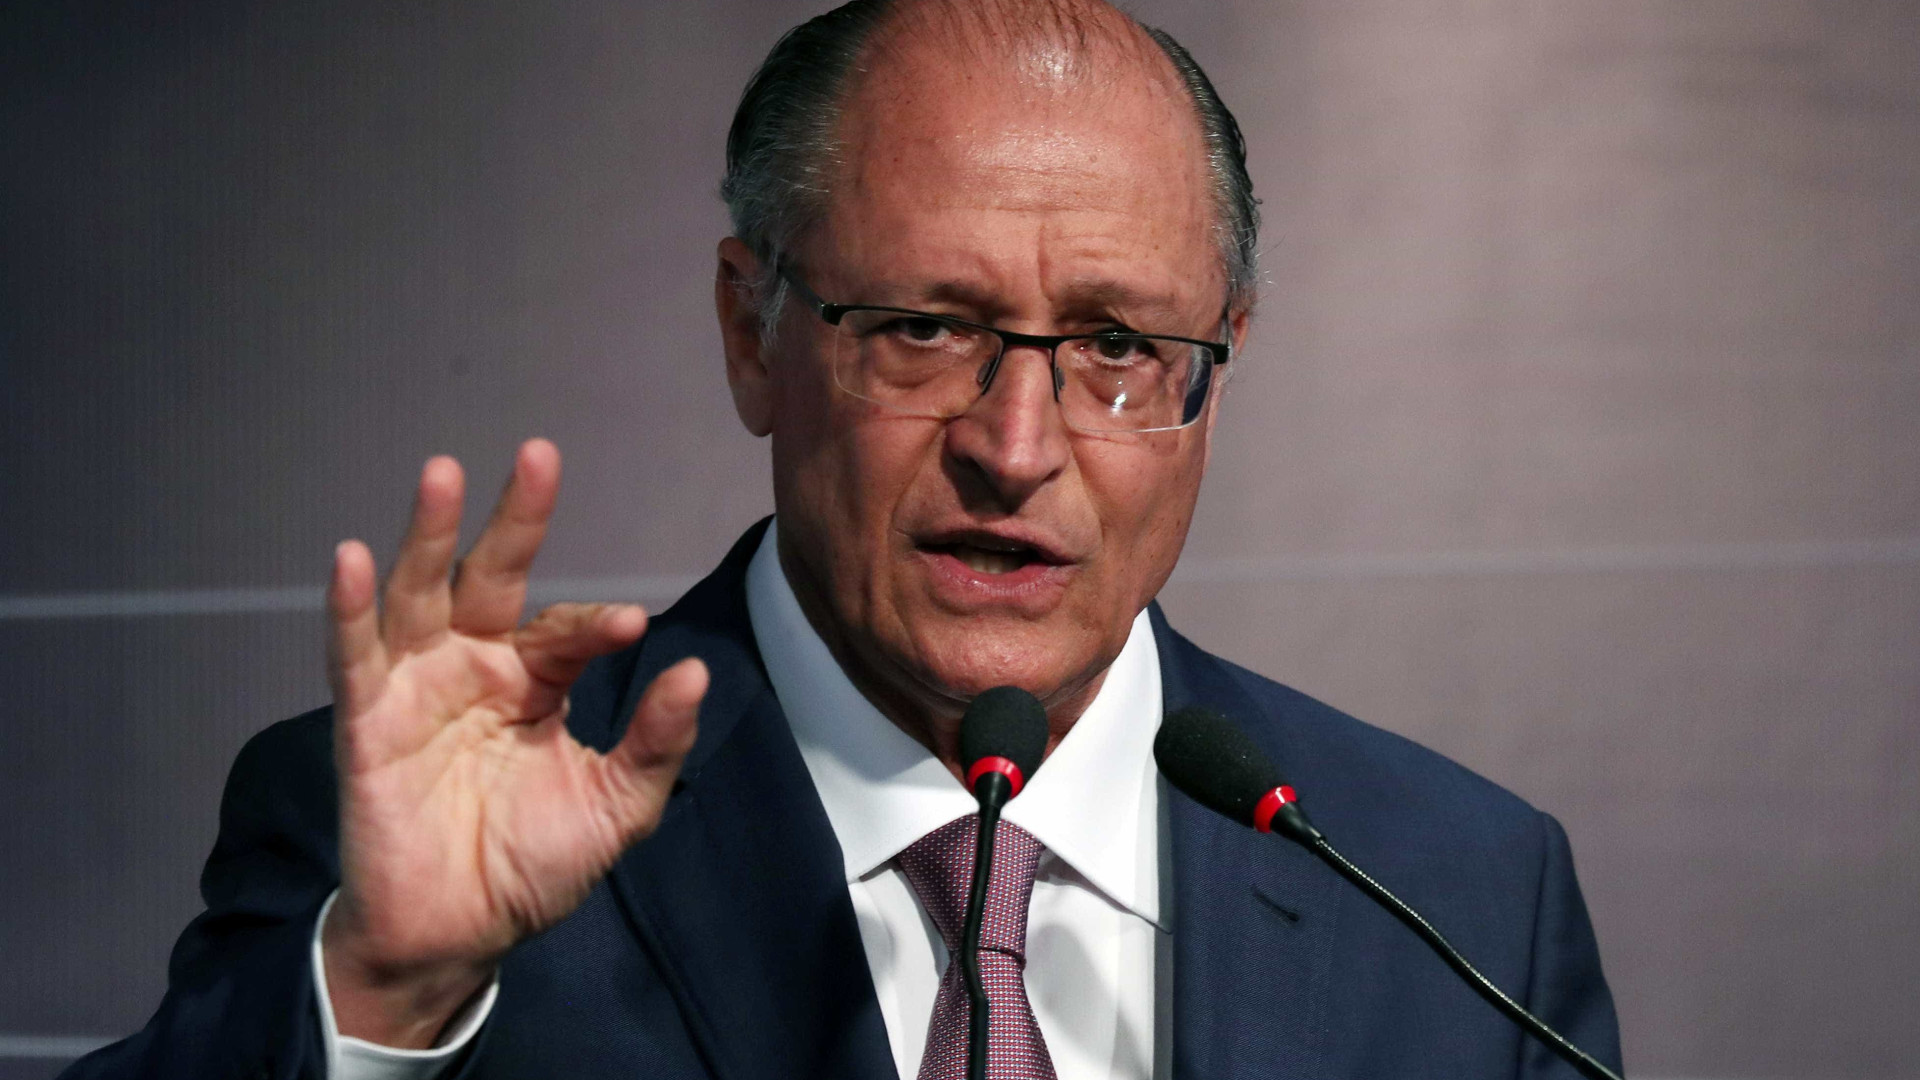 Alckmin crítica PT por 'esconder' candidato: 'Enganação vergonhosa'